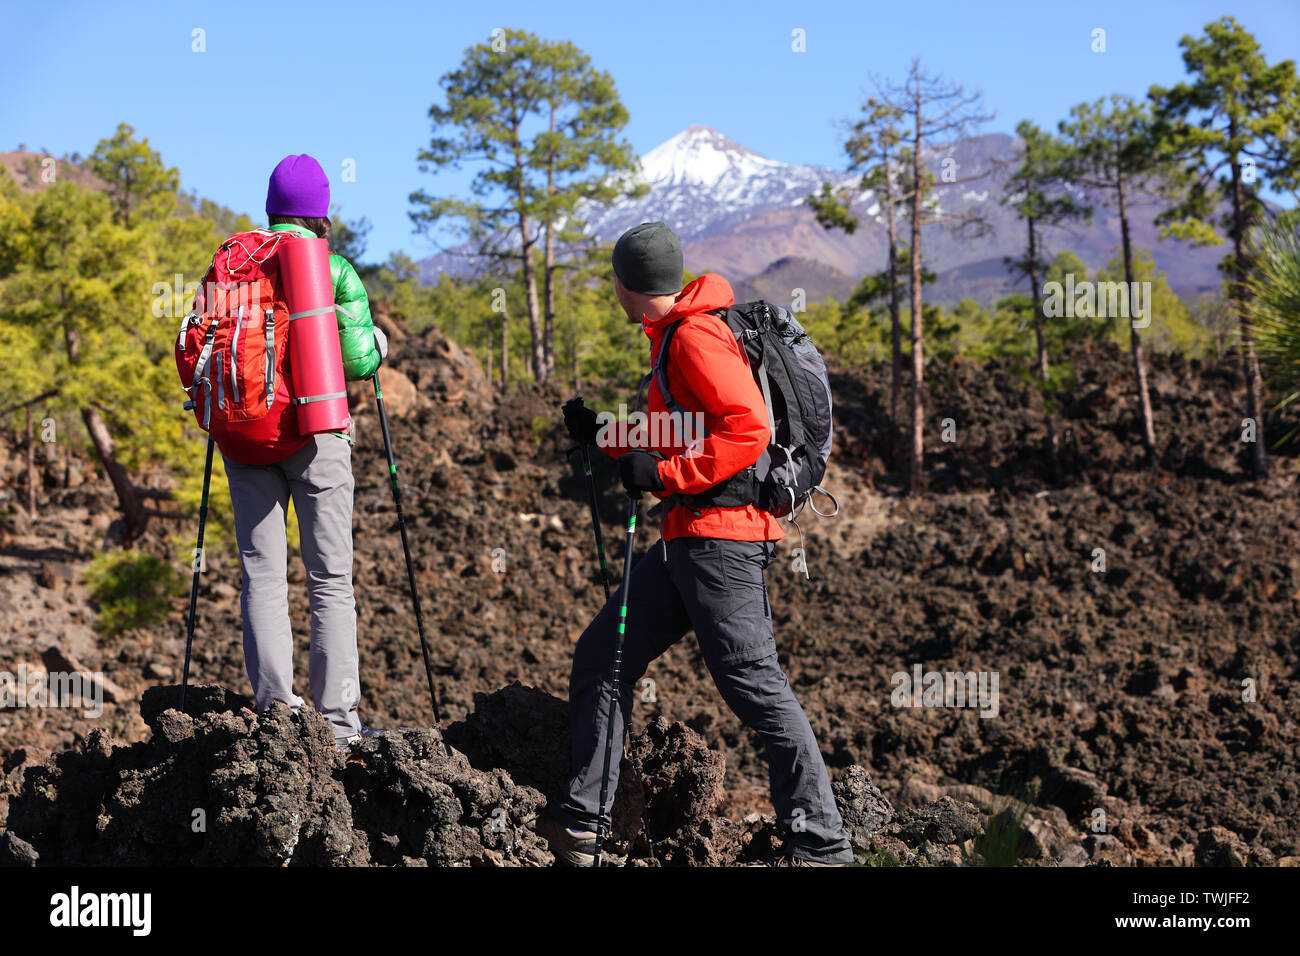 Menschen wandern - gesunden, aktiven Lebensstil Wanderer. Wanderer paar Wandern in wunderschöner Natur Landschaft. Frau und Mann Wanderer wandern während der Wanderung auf den Vulkan Teide, Teneriffa, Kanarische Inseln, Spanien. Stockfoto